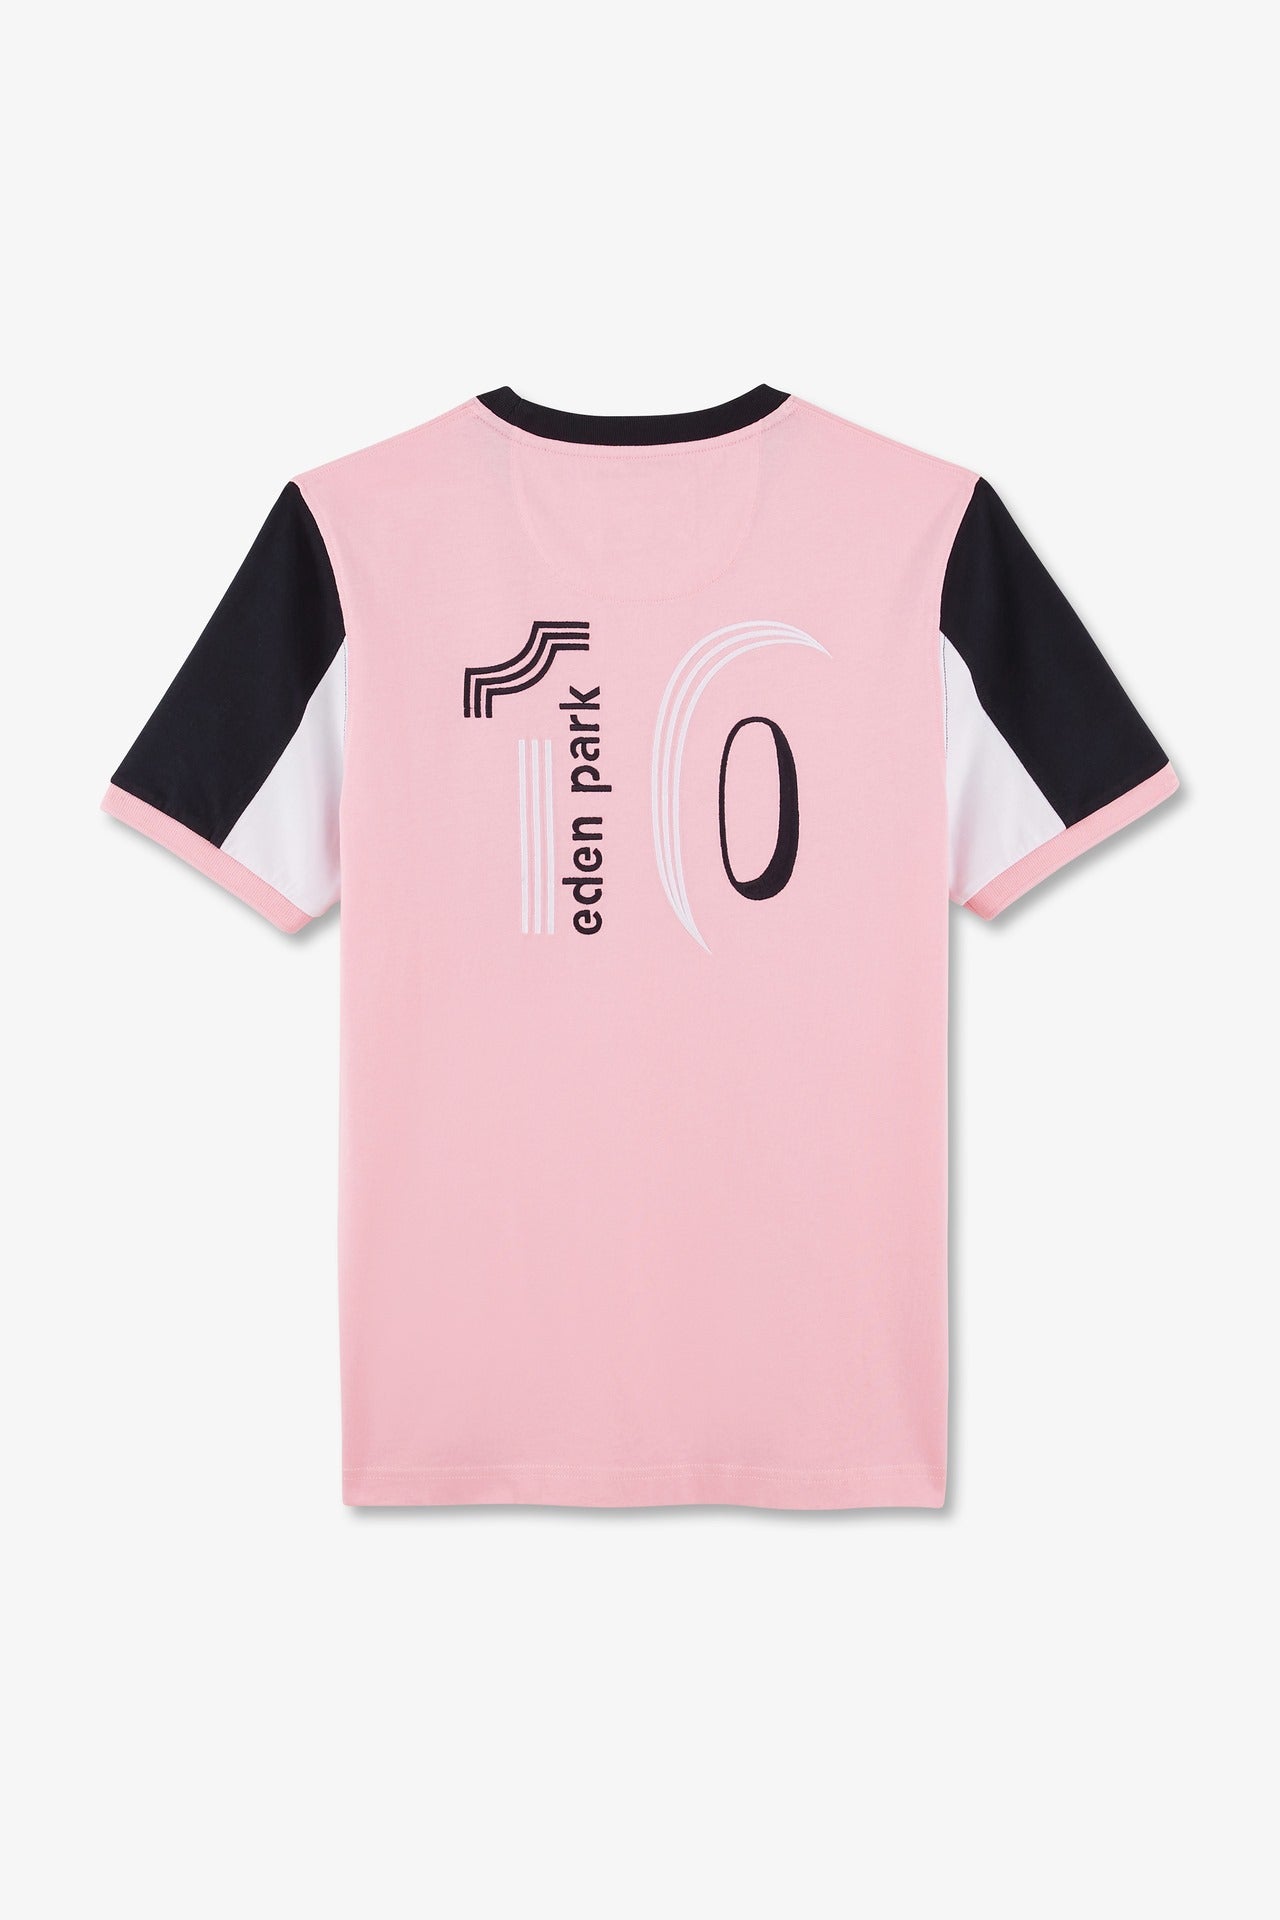 T-shirt manches courtes rose en coton broderie numéro 10 - Image 6